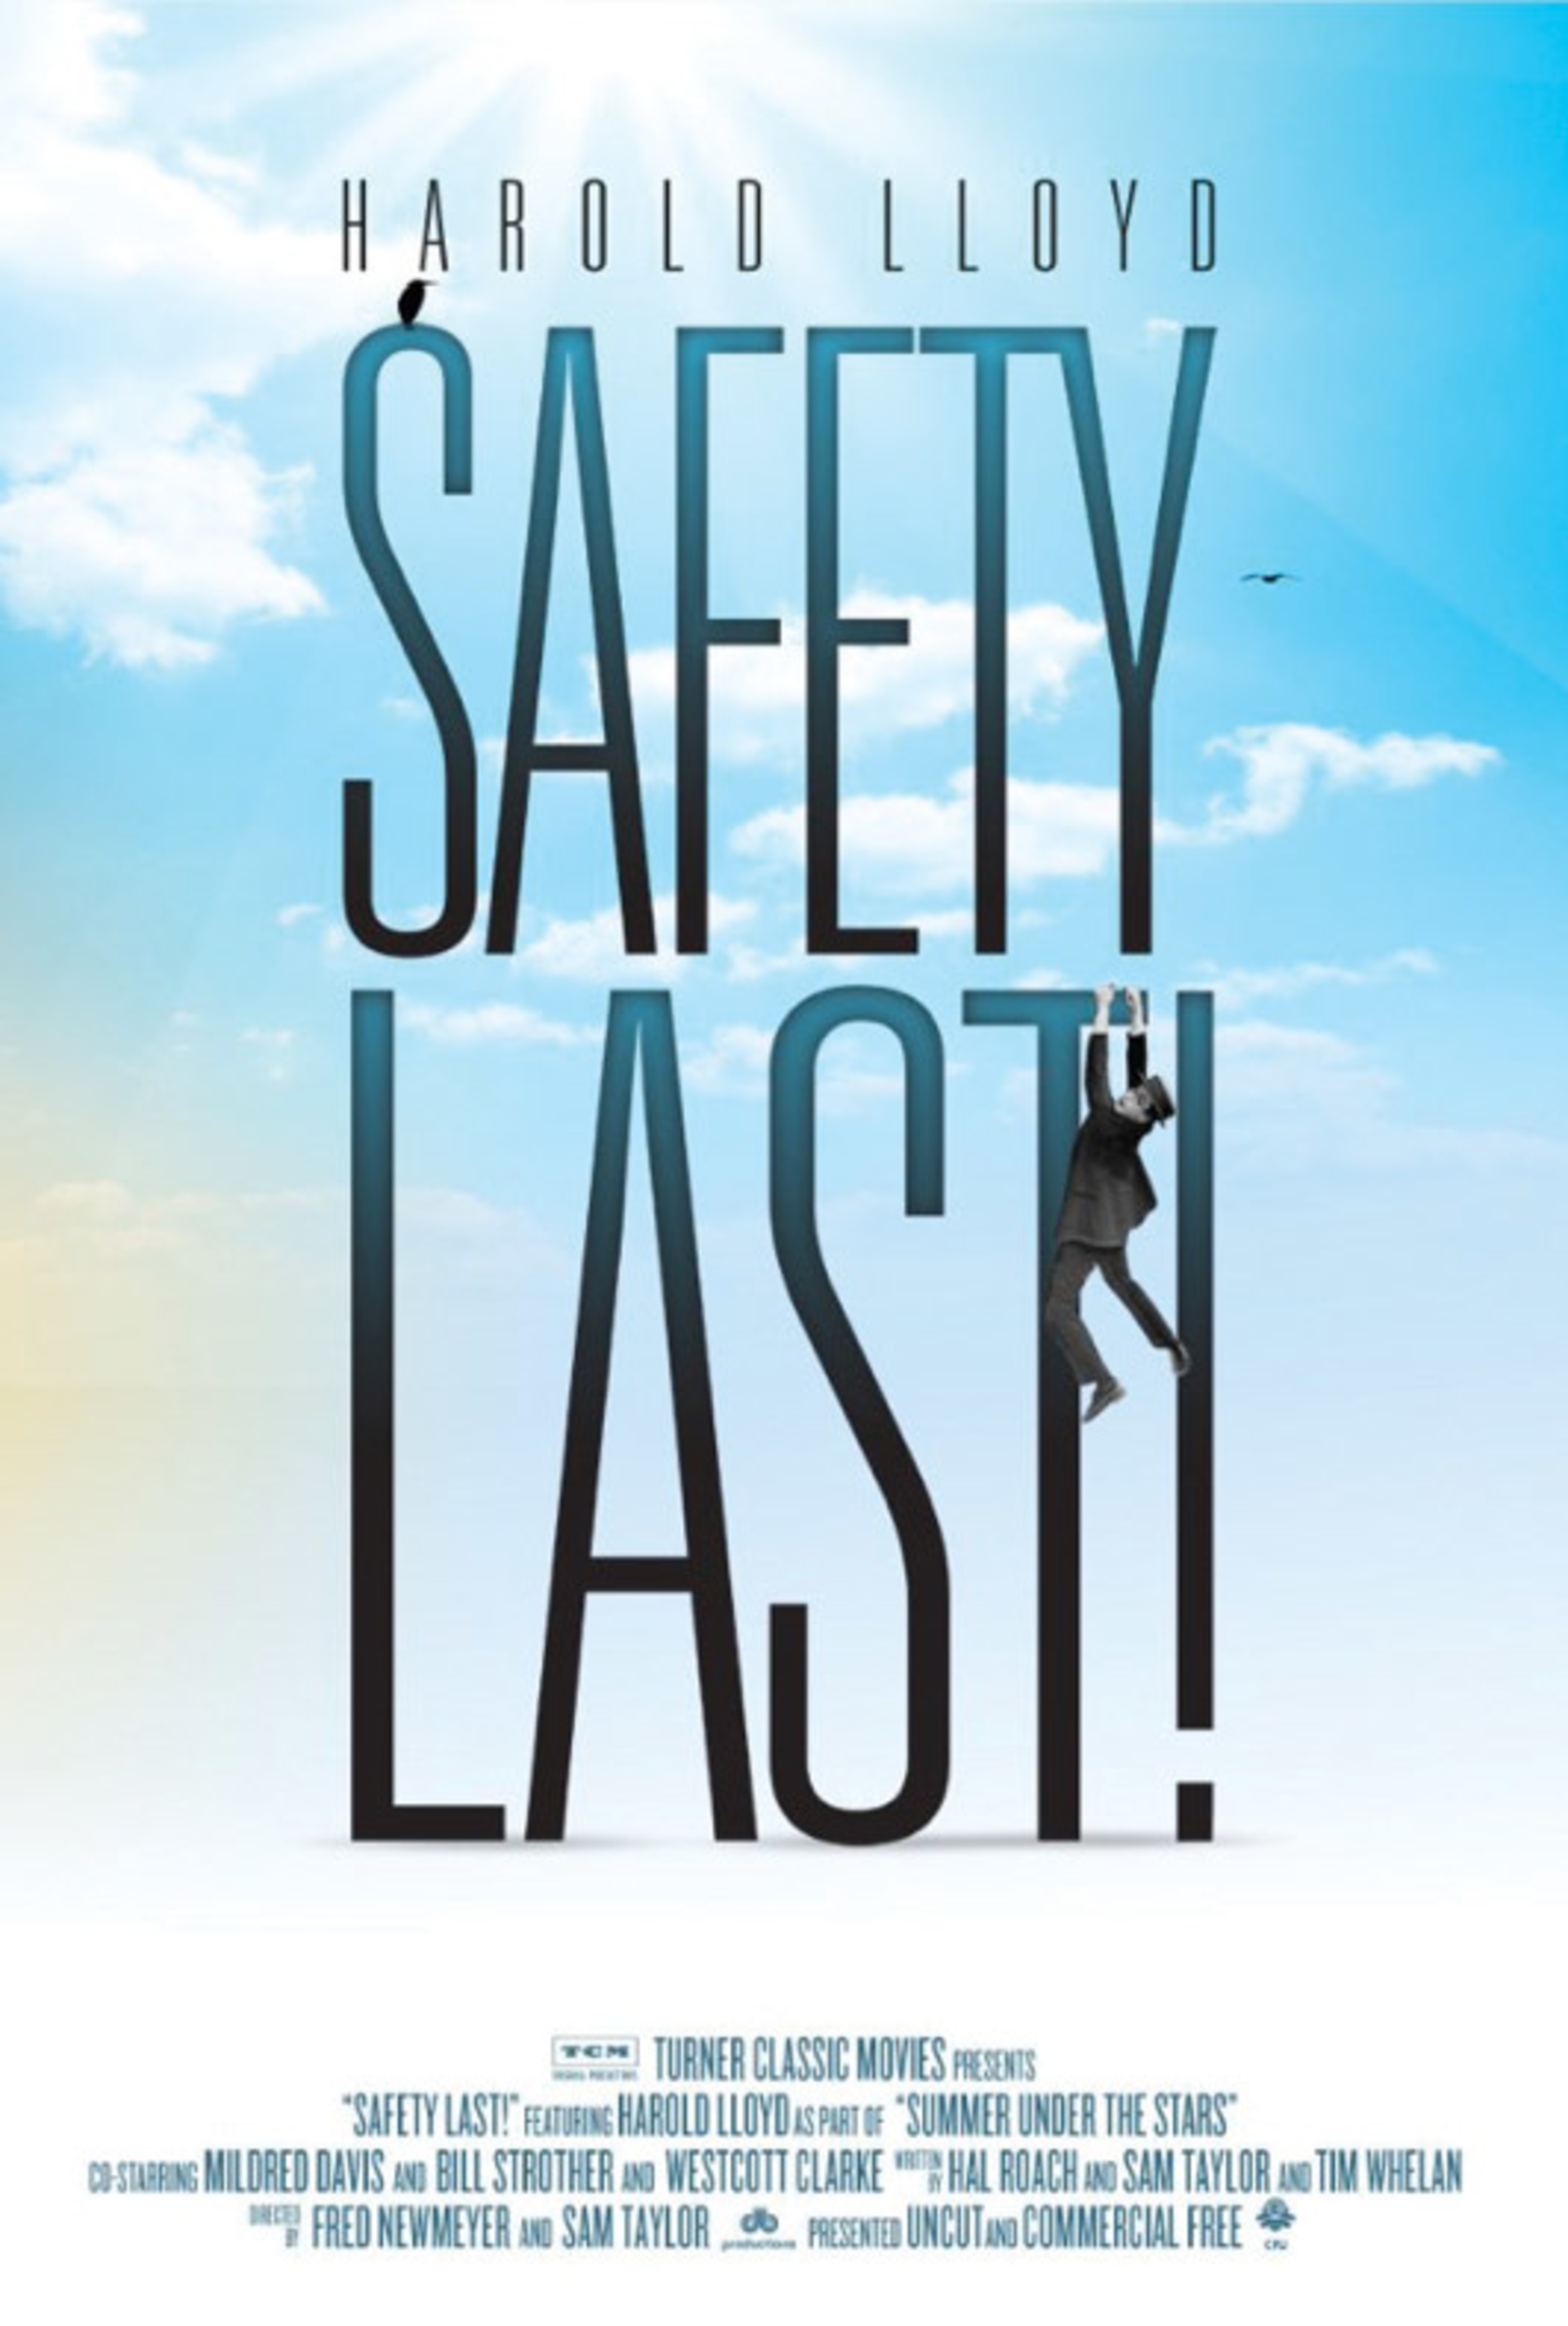 Safety Last! Cincinnati CityBeat